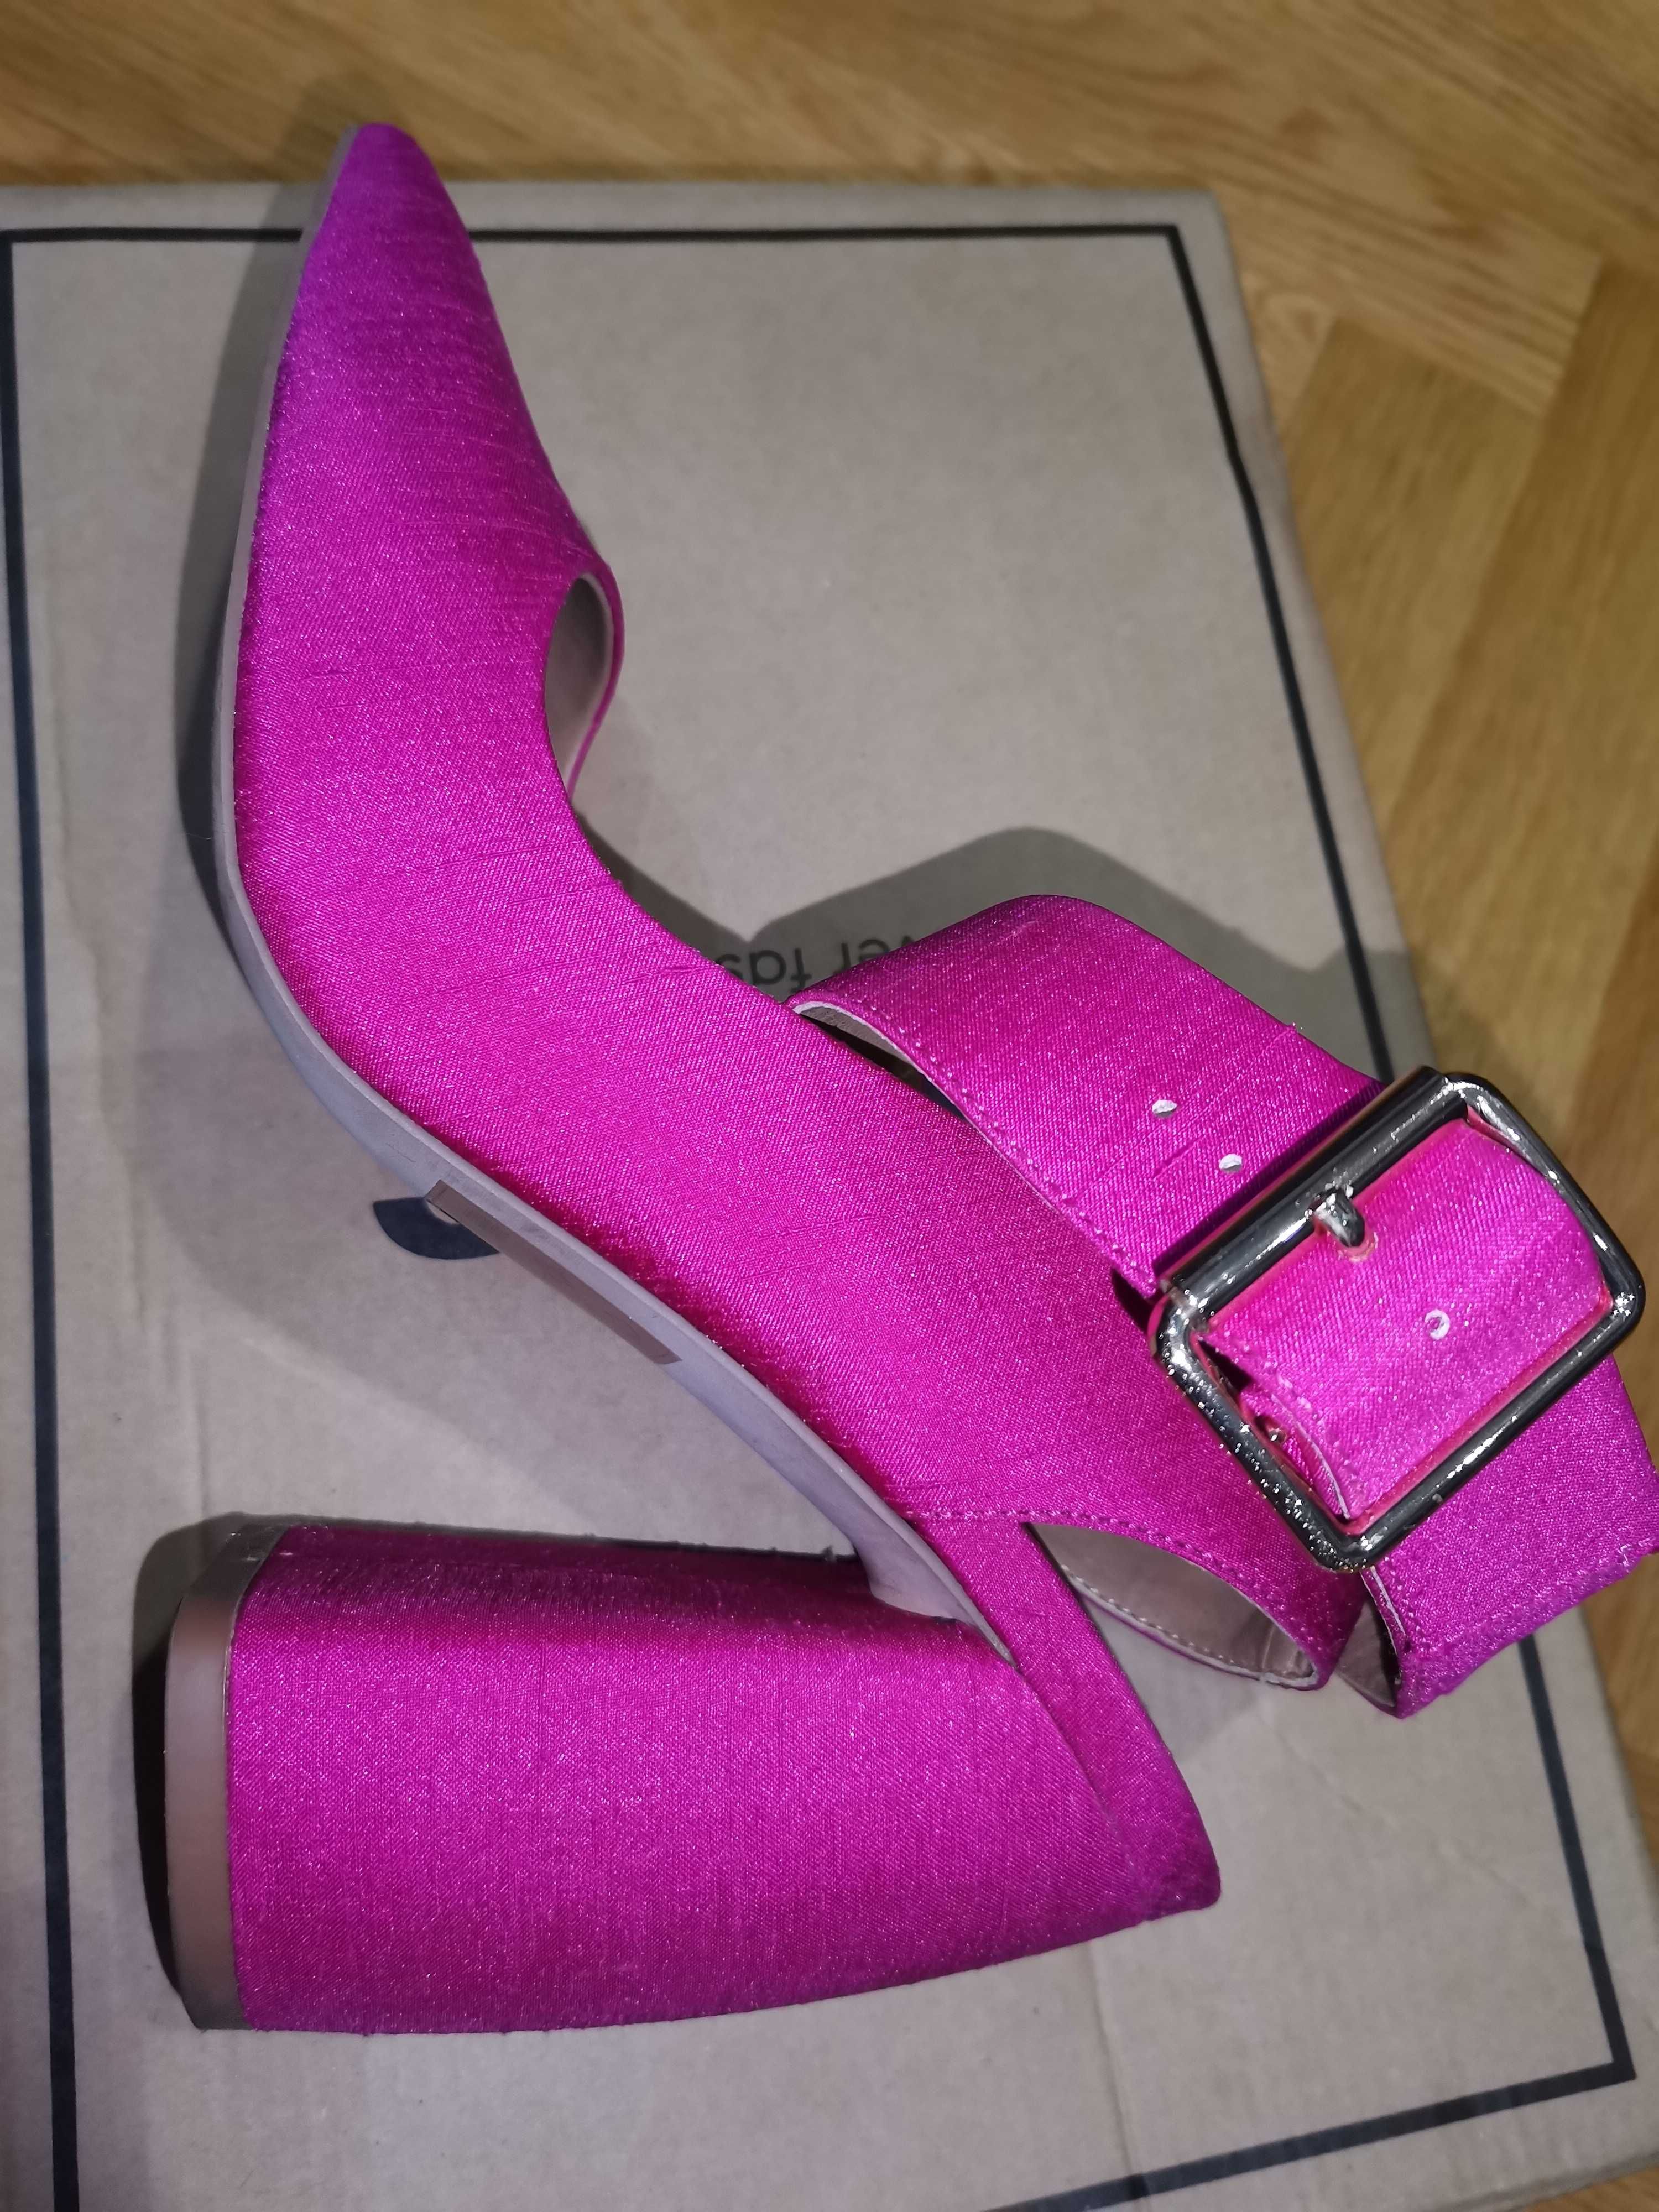 Дамски сандали на ток, 37,5 номер в цикламено розово марка ASOS